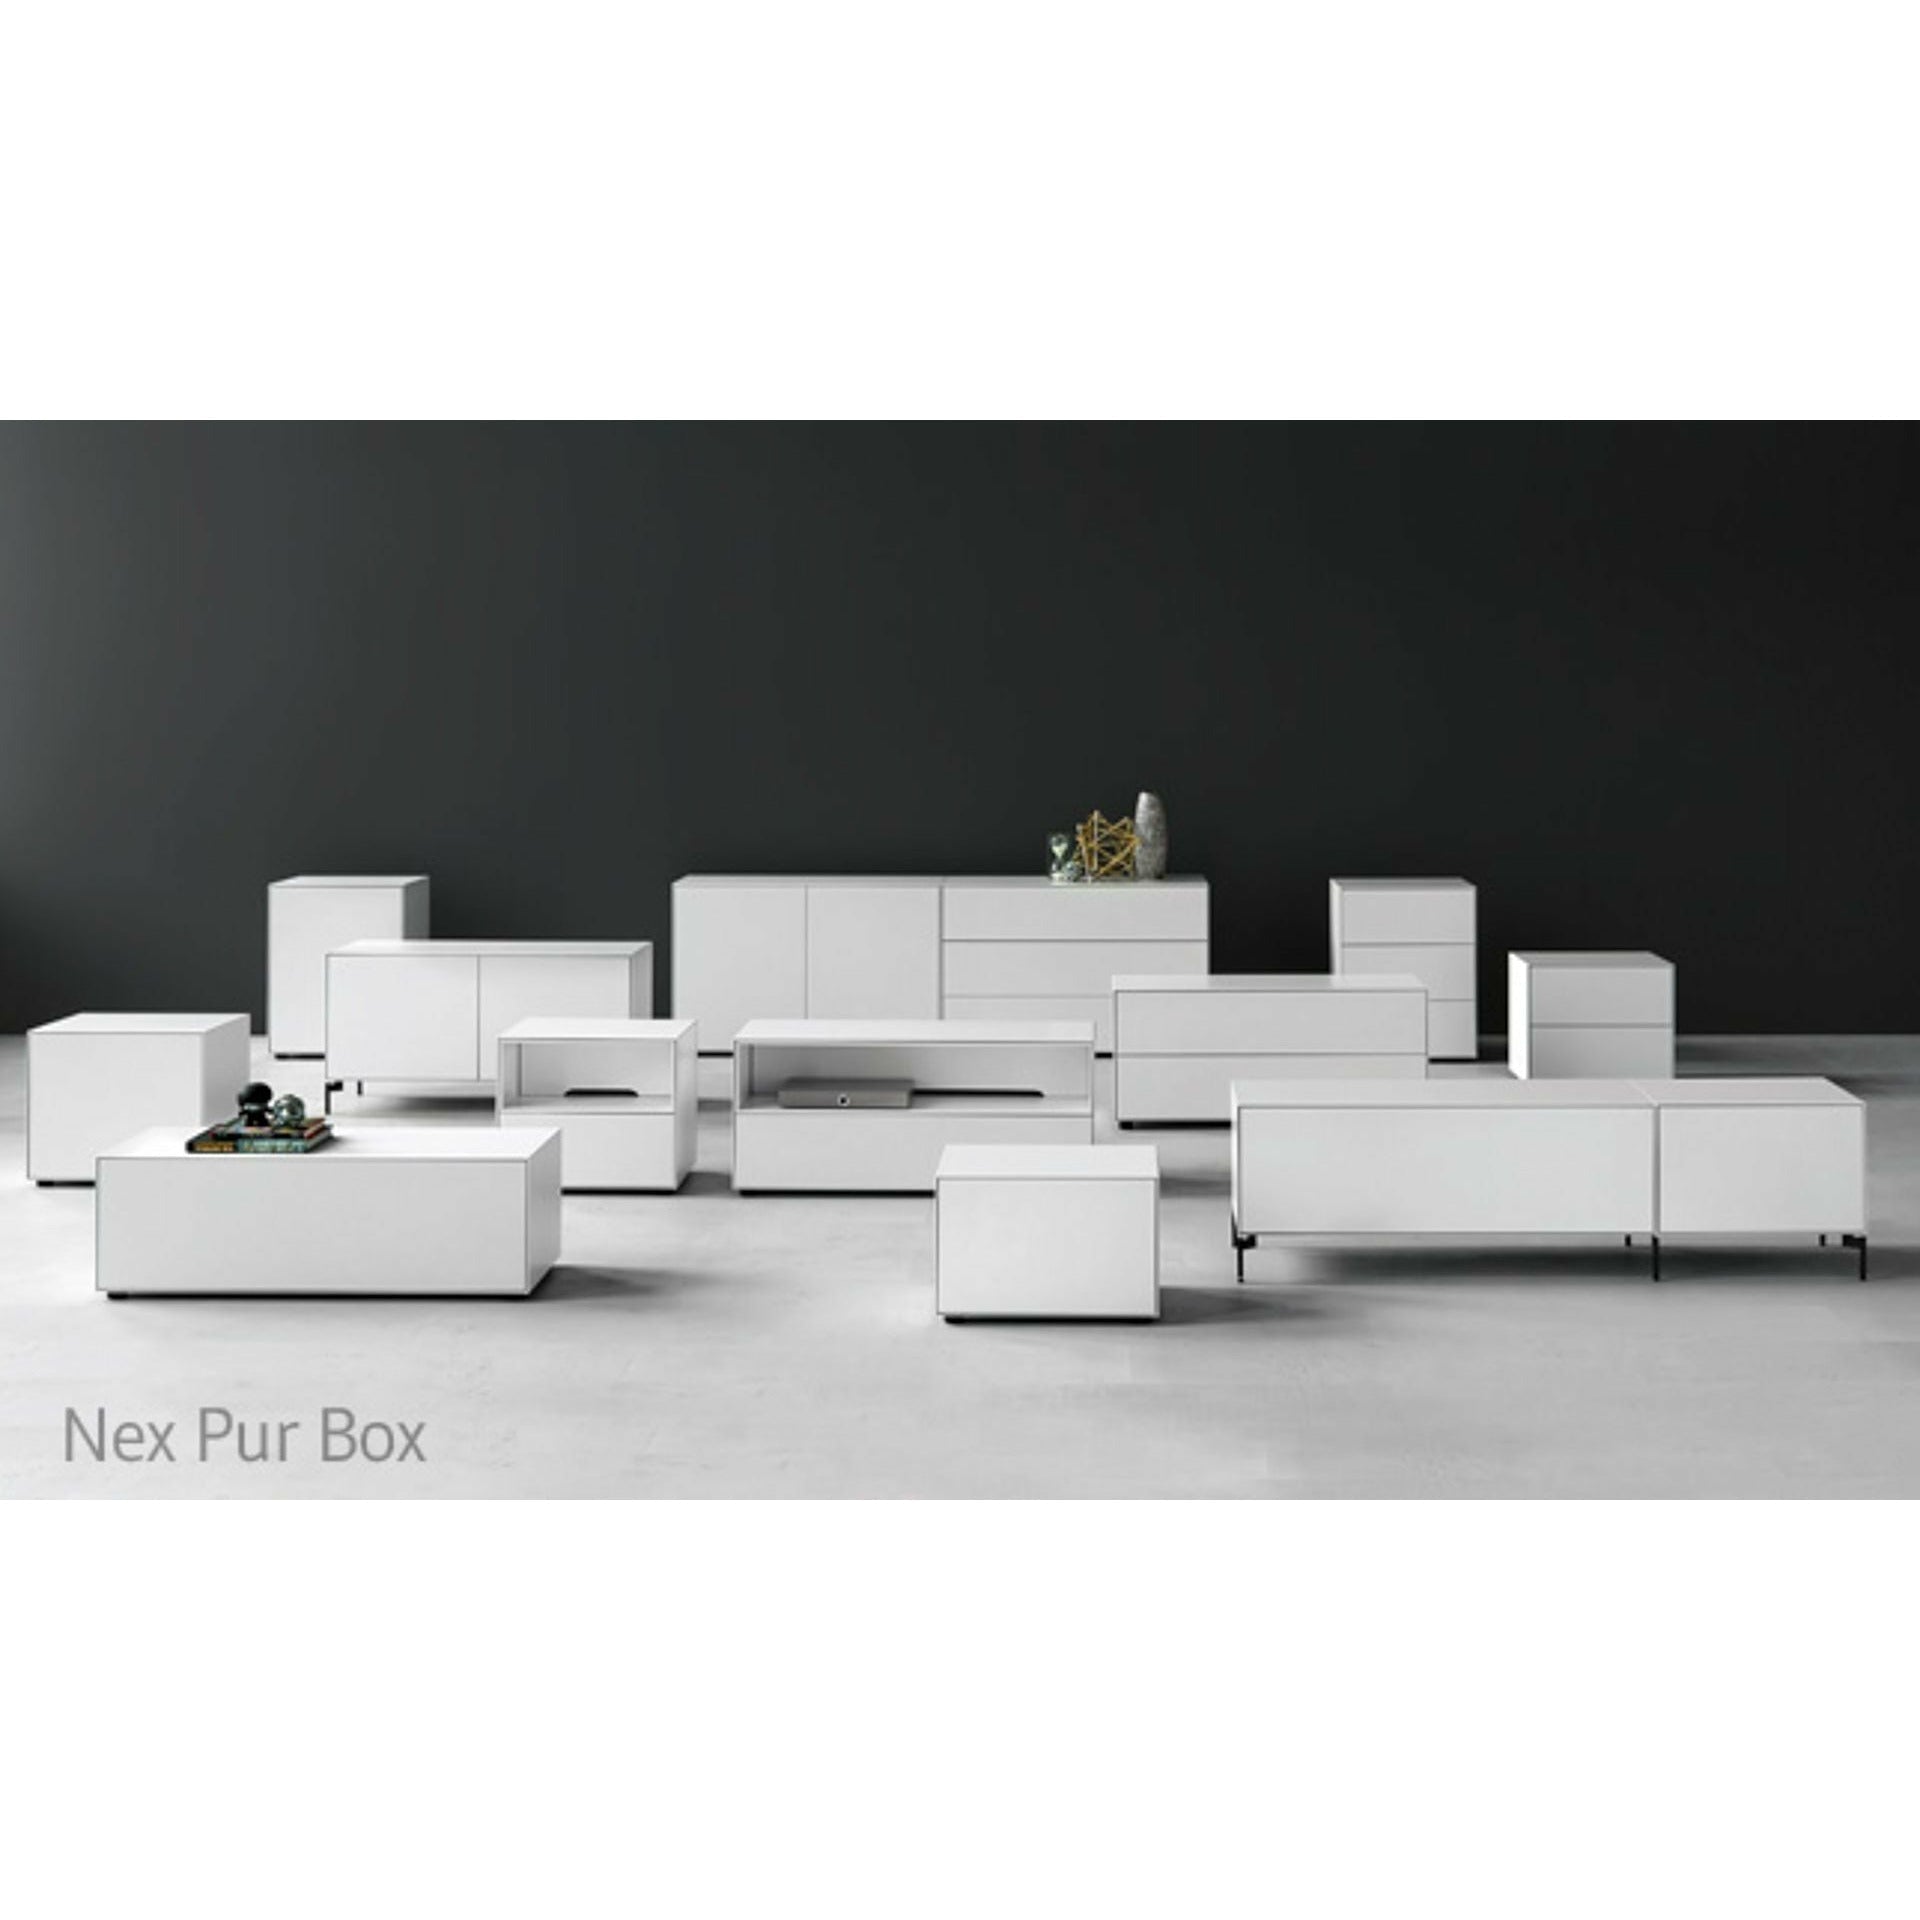 Piure Nex Pur Box Media Flap HX W 37,5x180 cm, 1 hillu